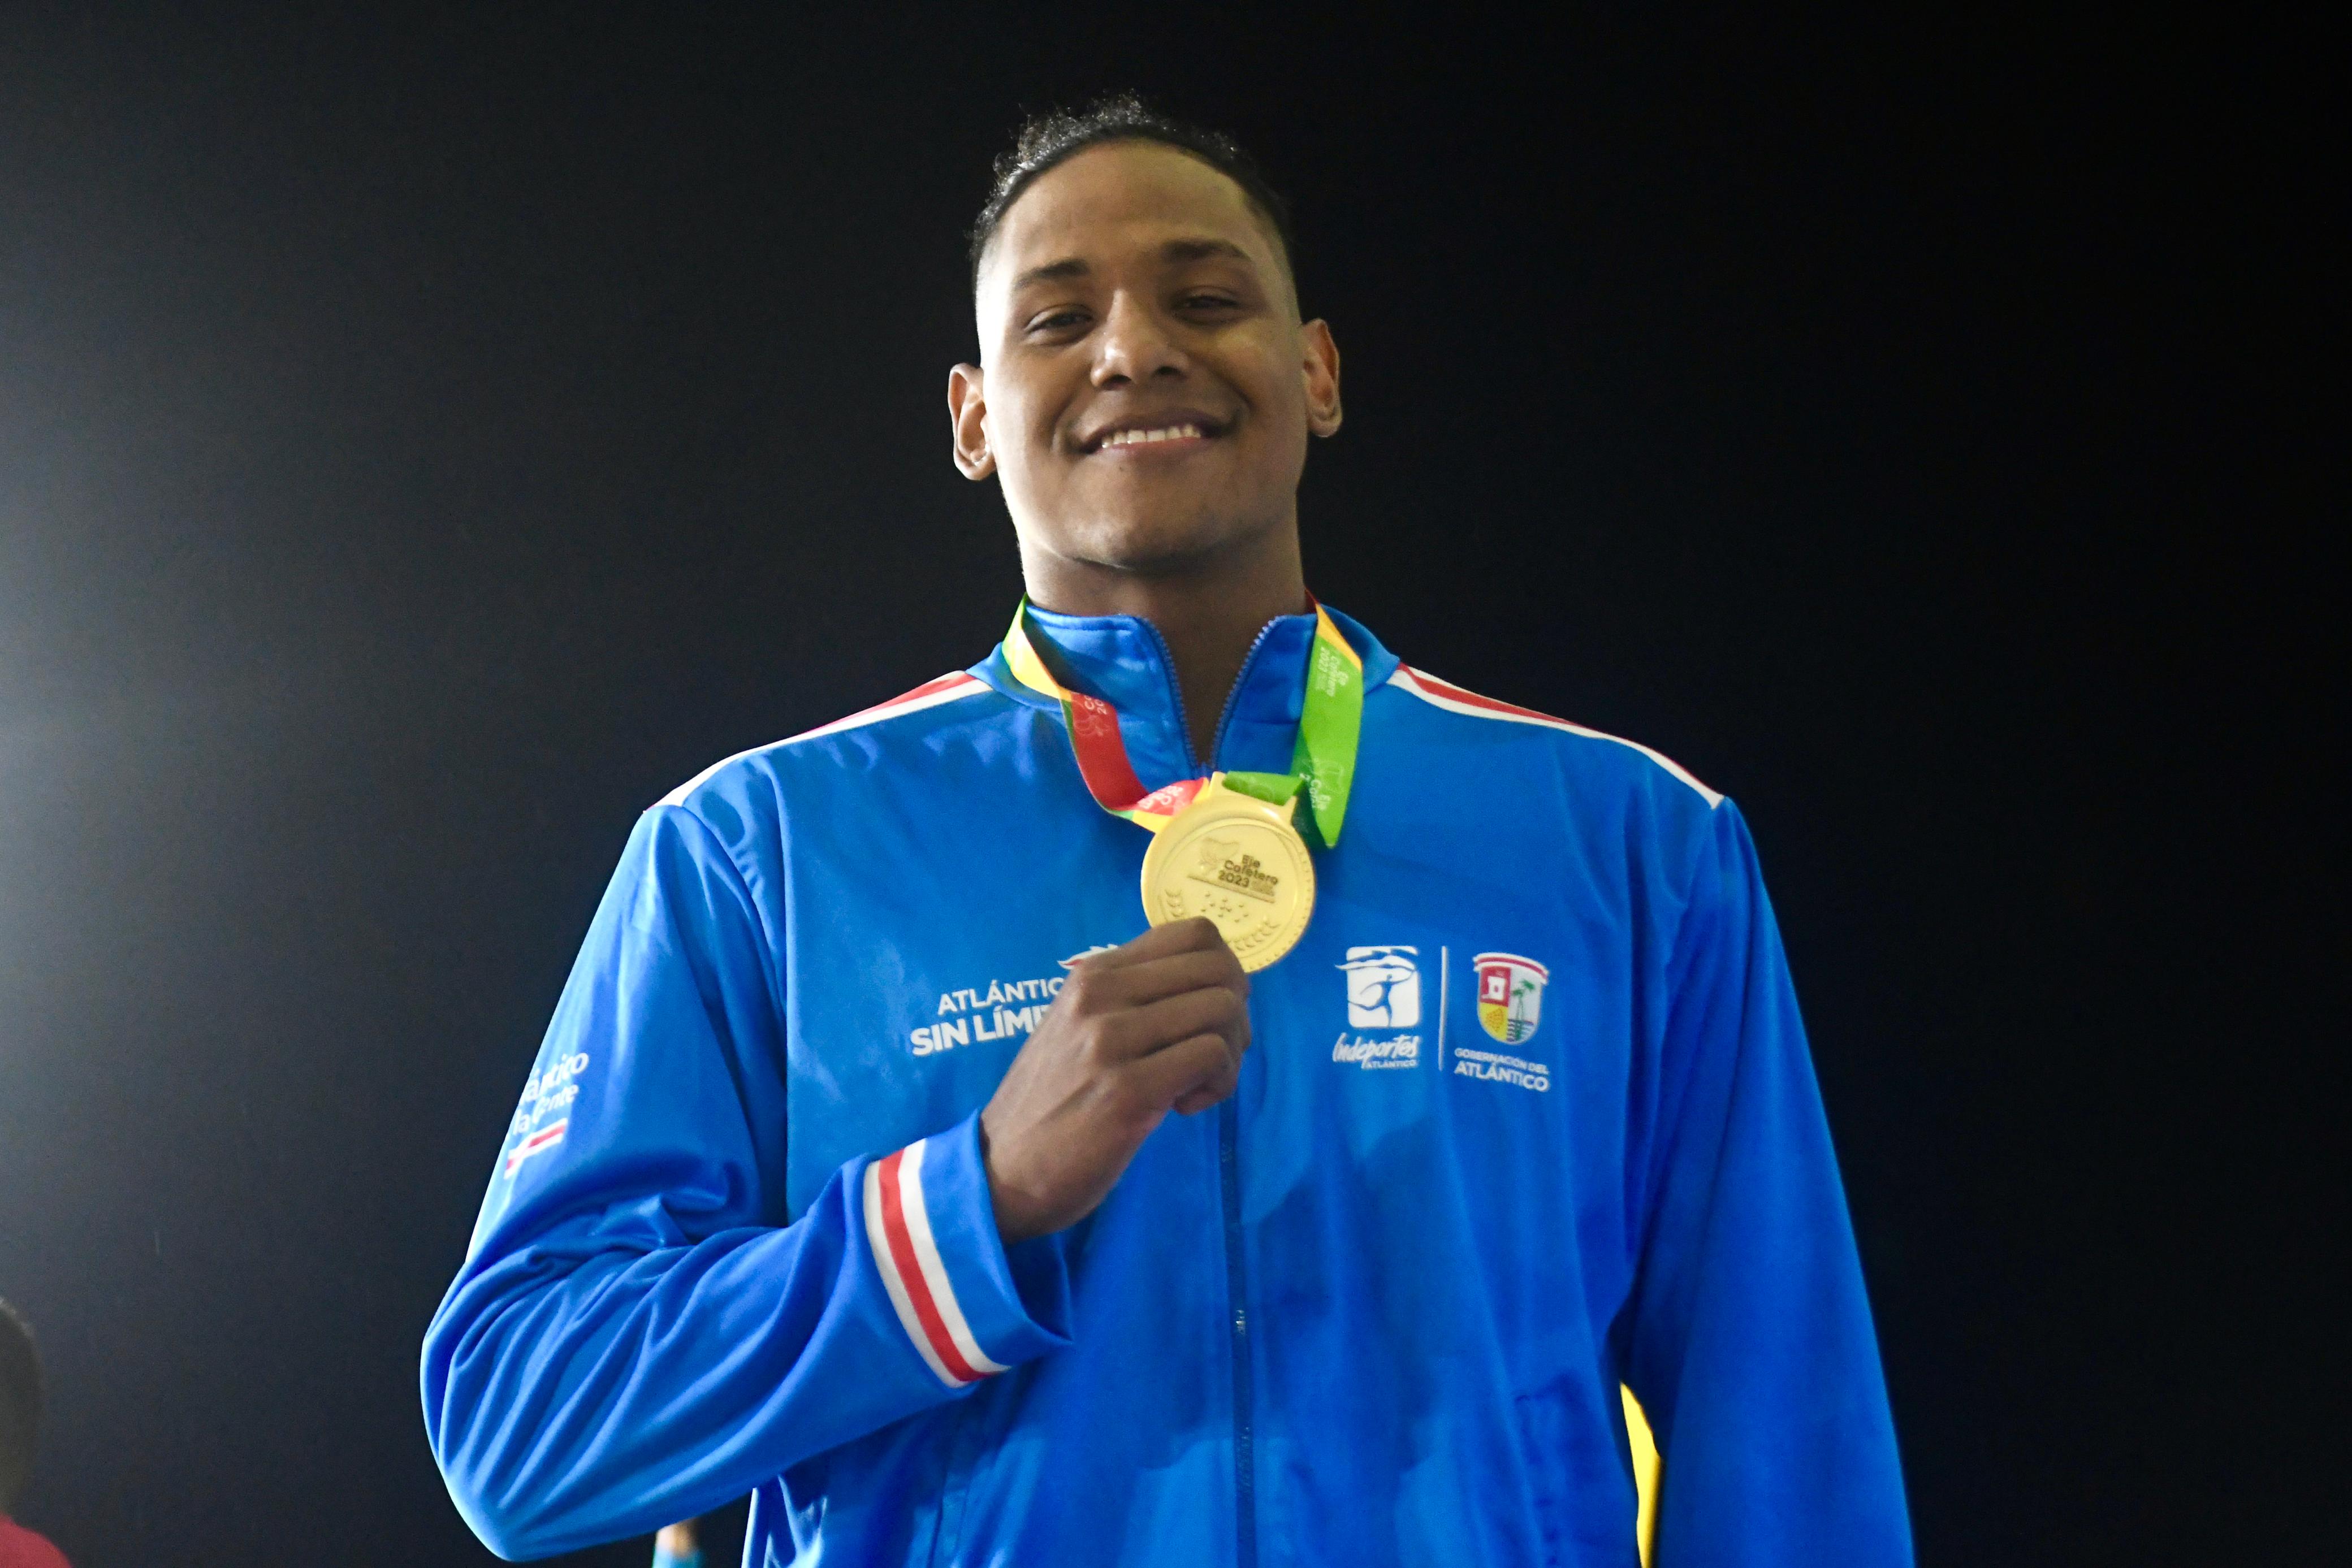 El nadador Camilo Marrugo, oro en los 50 metros libres.